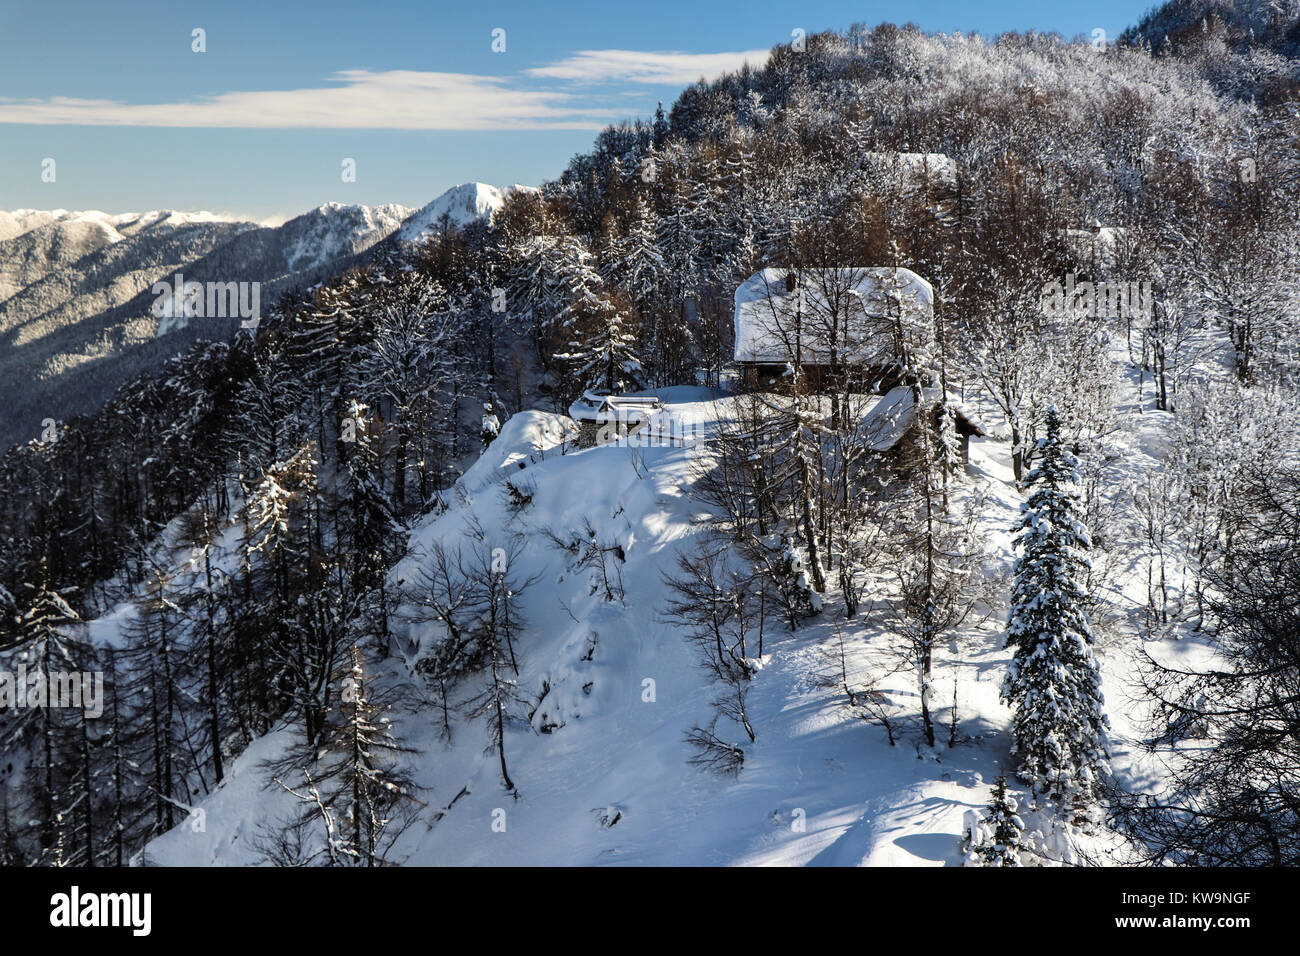 Eine atemberaubende Mountain Lodge in Vogel Ski Resort, Bohinj (Slowenien), in diesem wunderbaren Bild aufgenommen, perfekt zu einer Weihnachtskarte oder Postkarte schmücken. Stockfoto